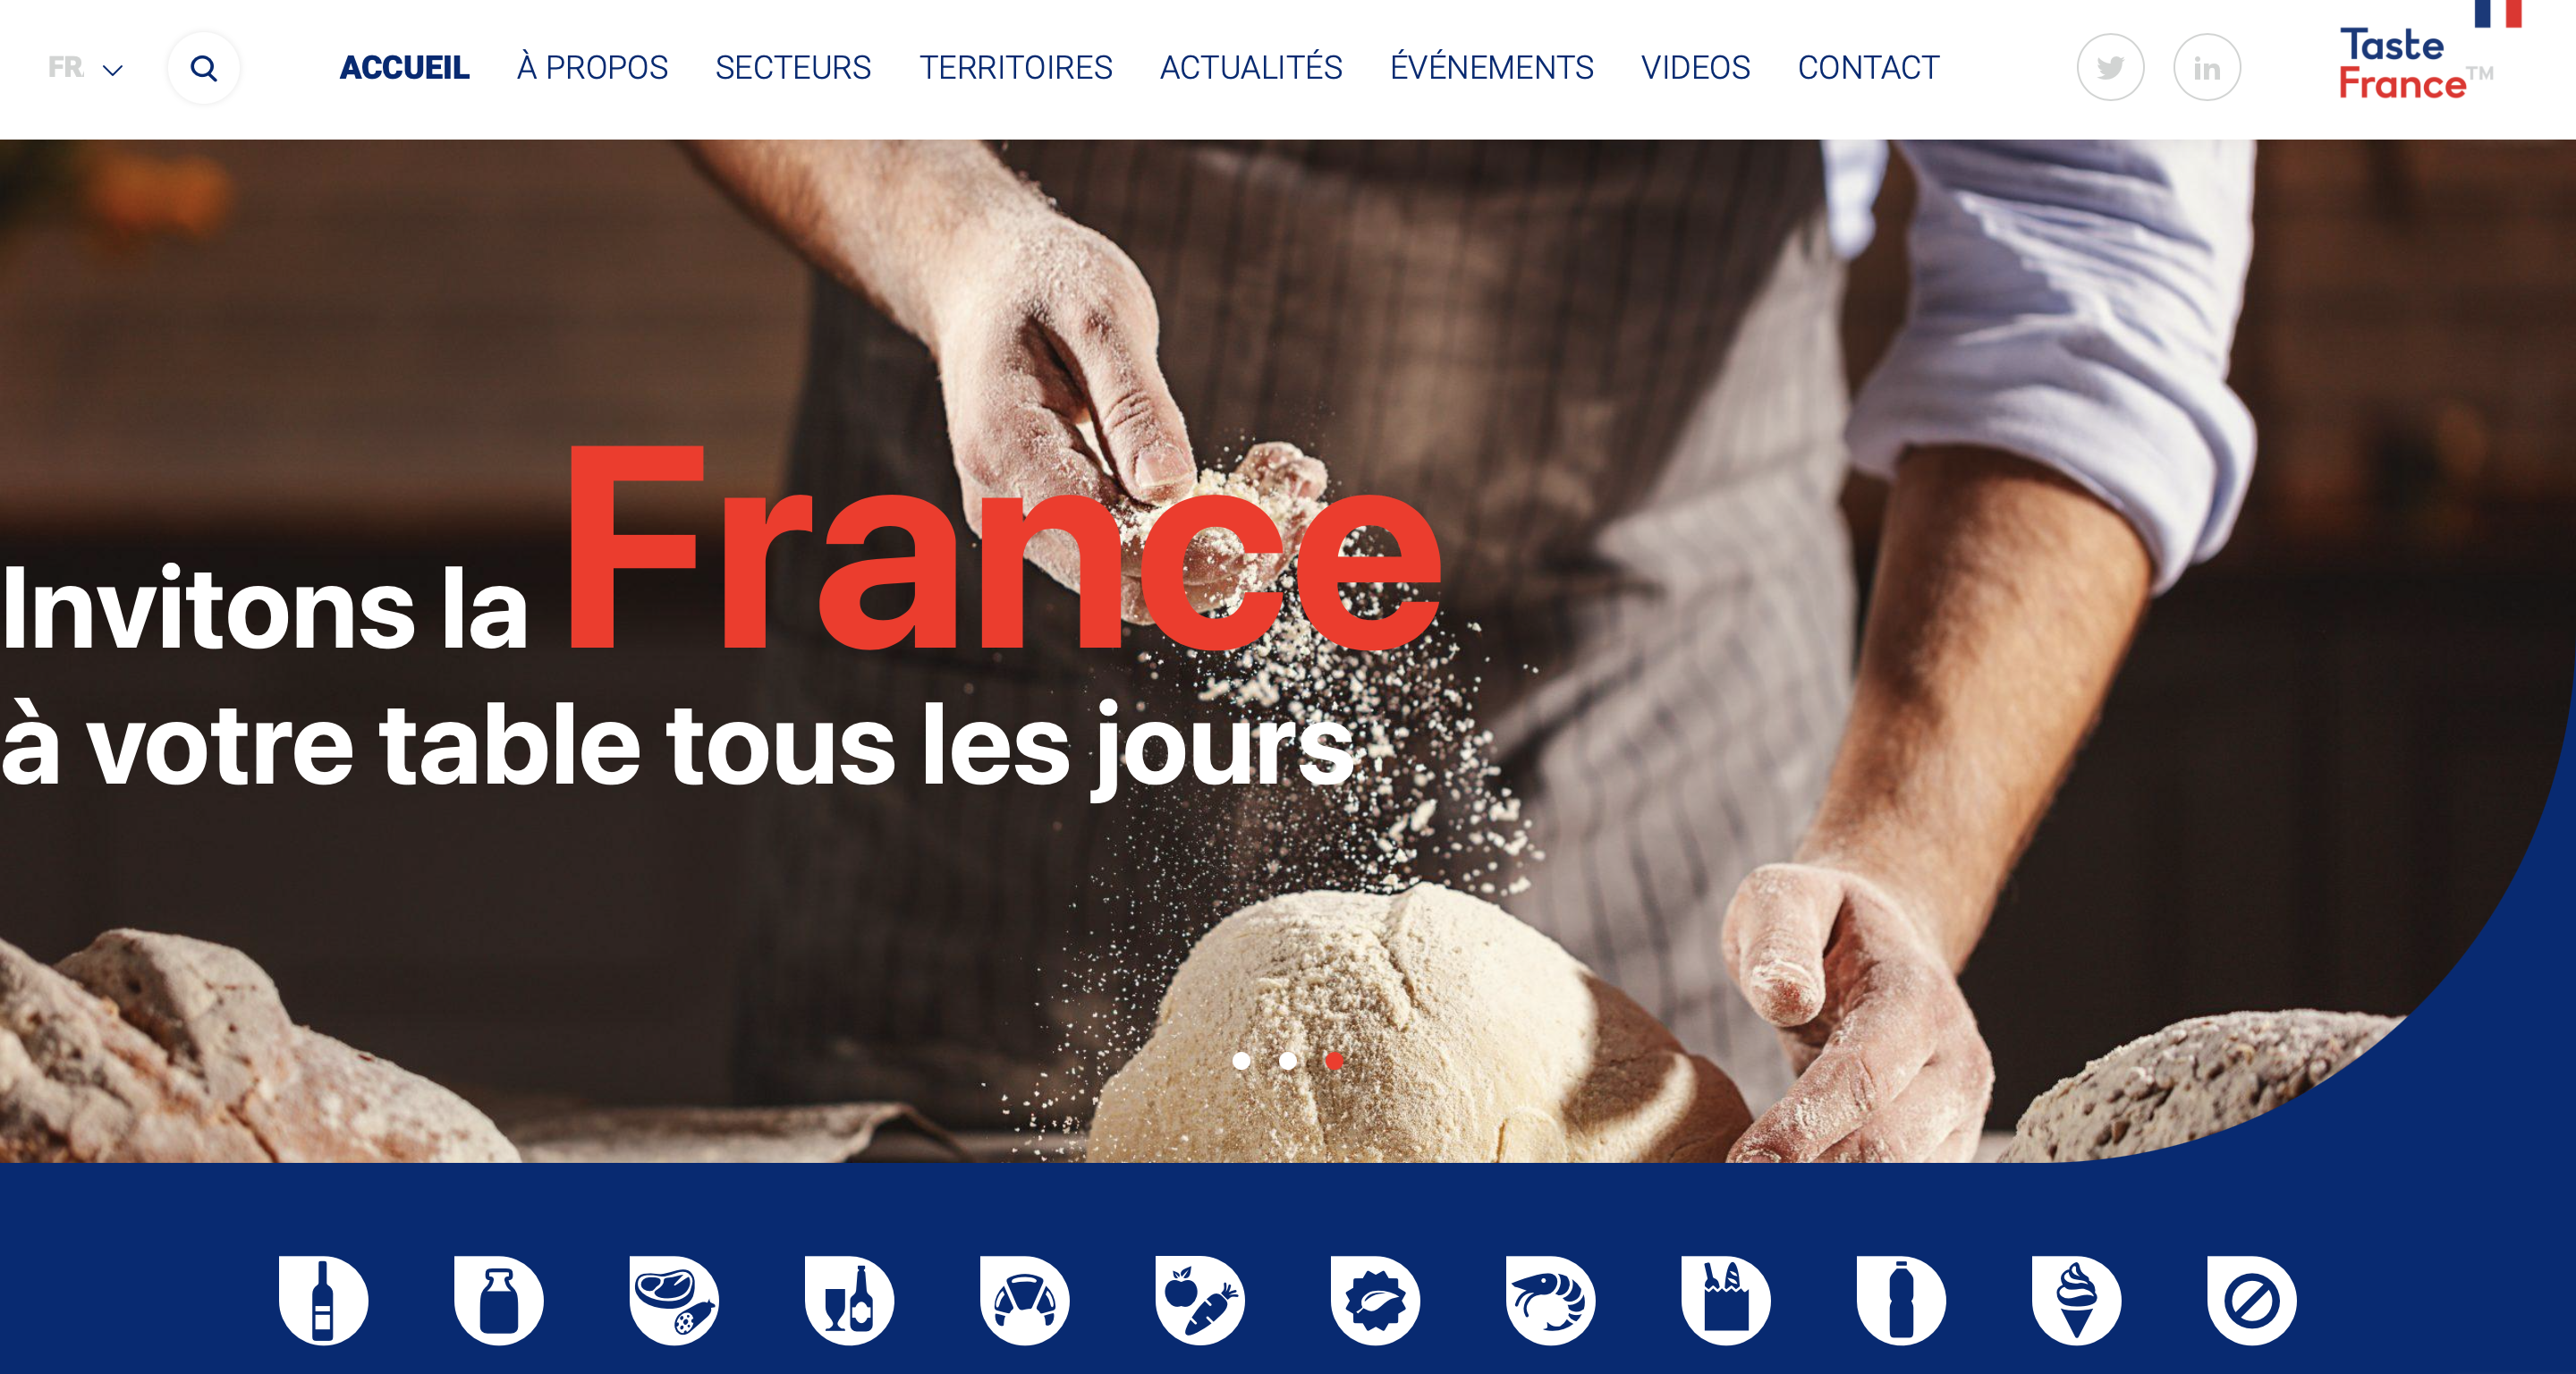 Taste France